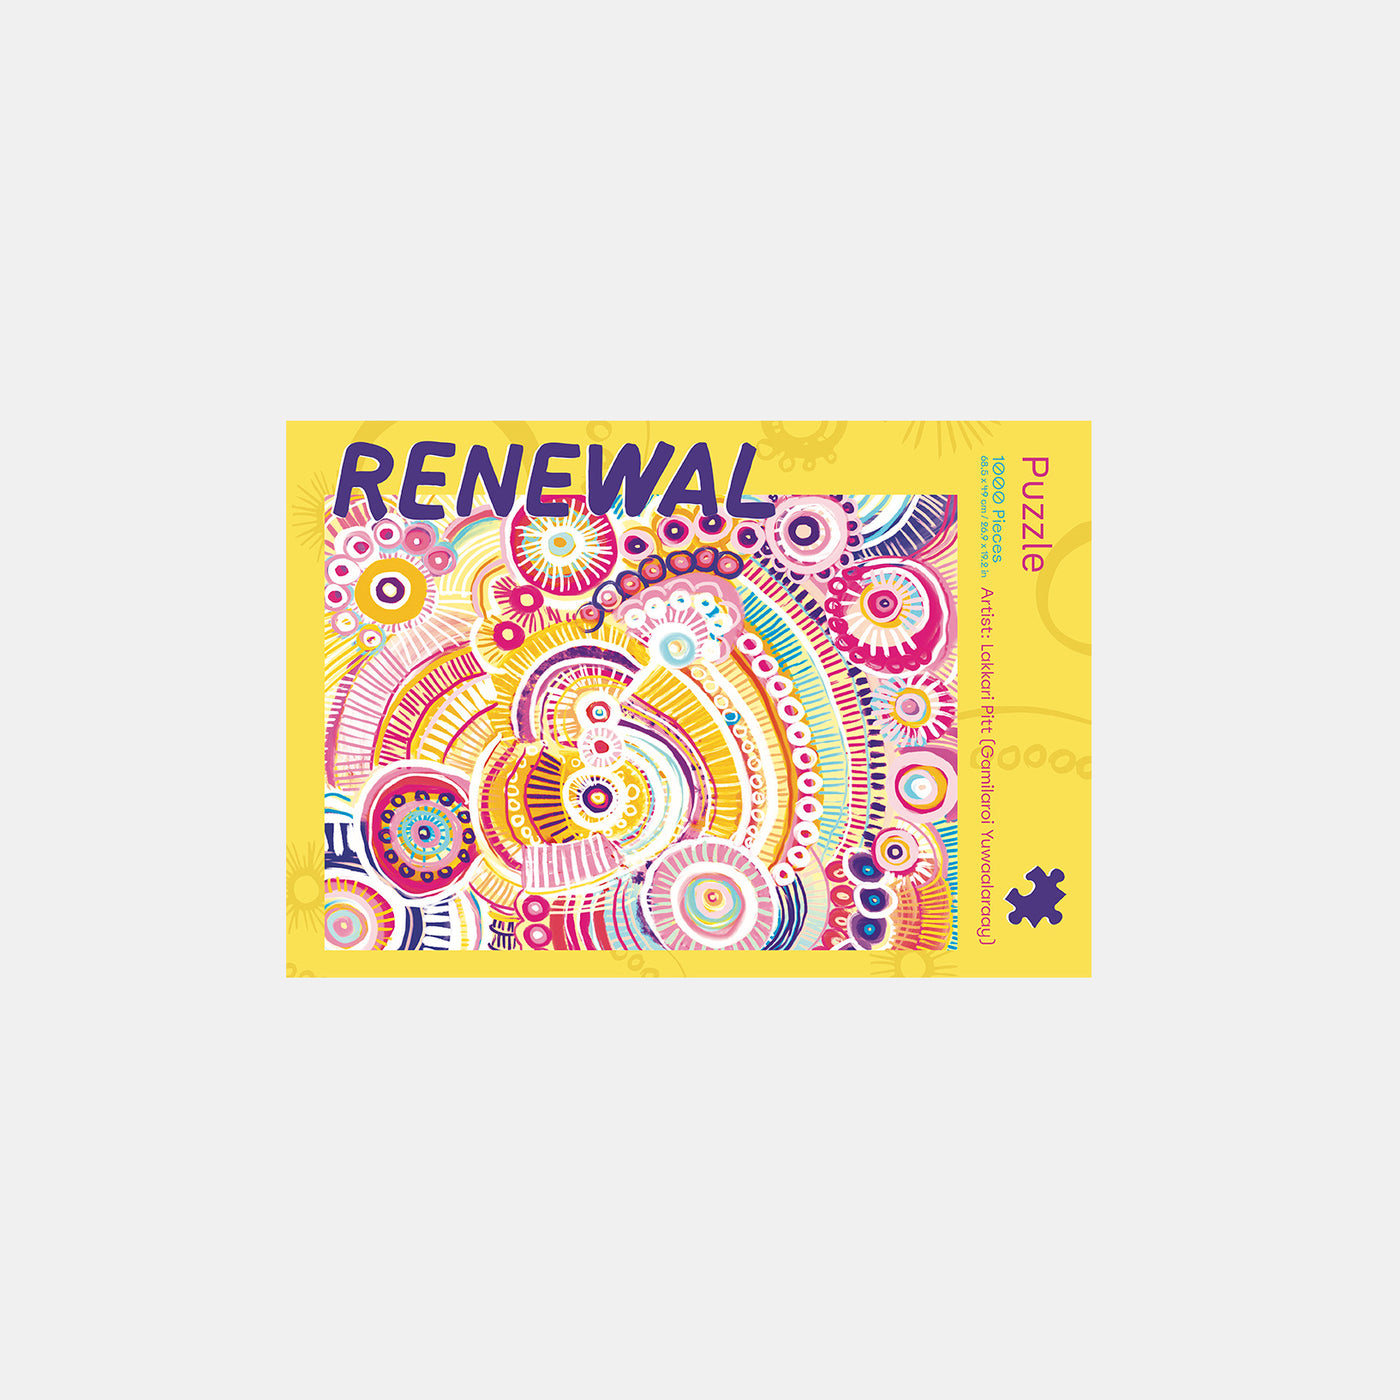 Renewal - 1000 pieces puzzle